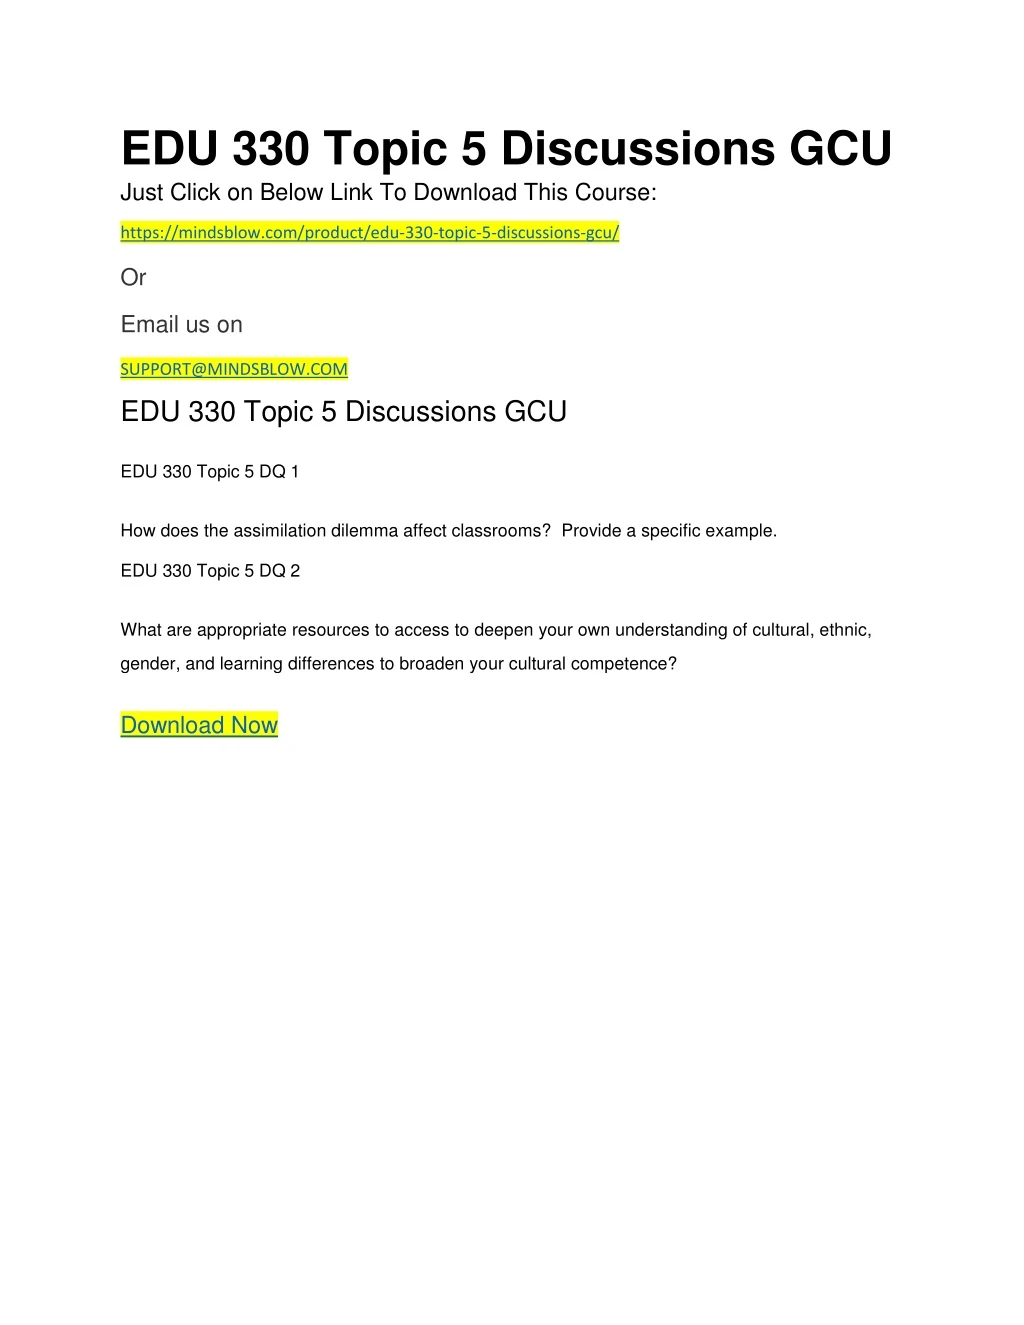 edu 330 topic 5 discussions gcu just click